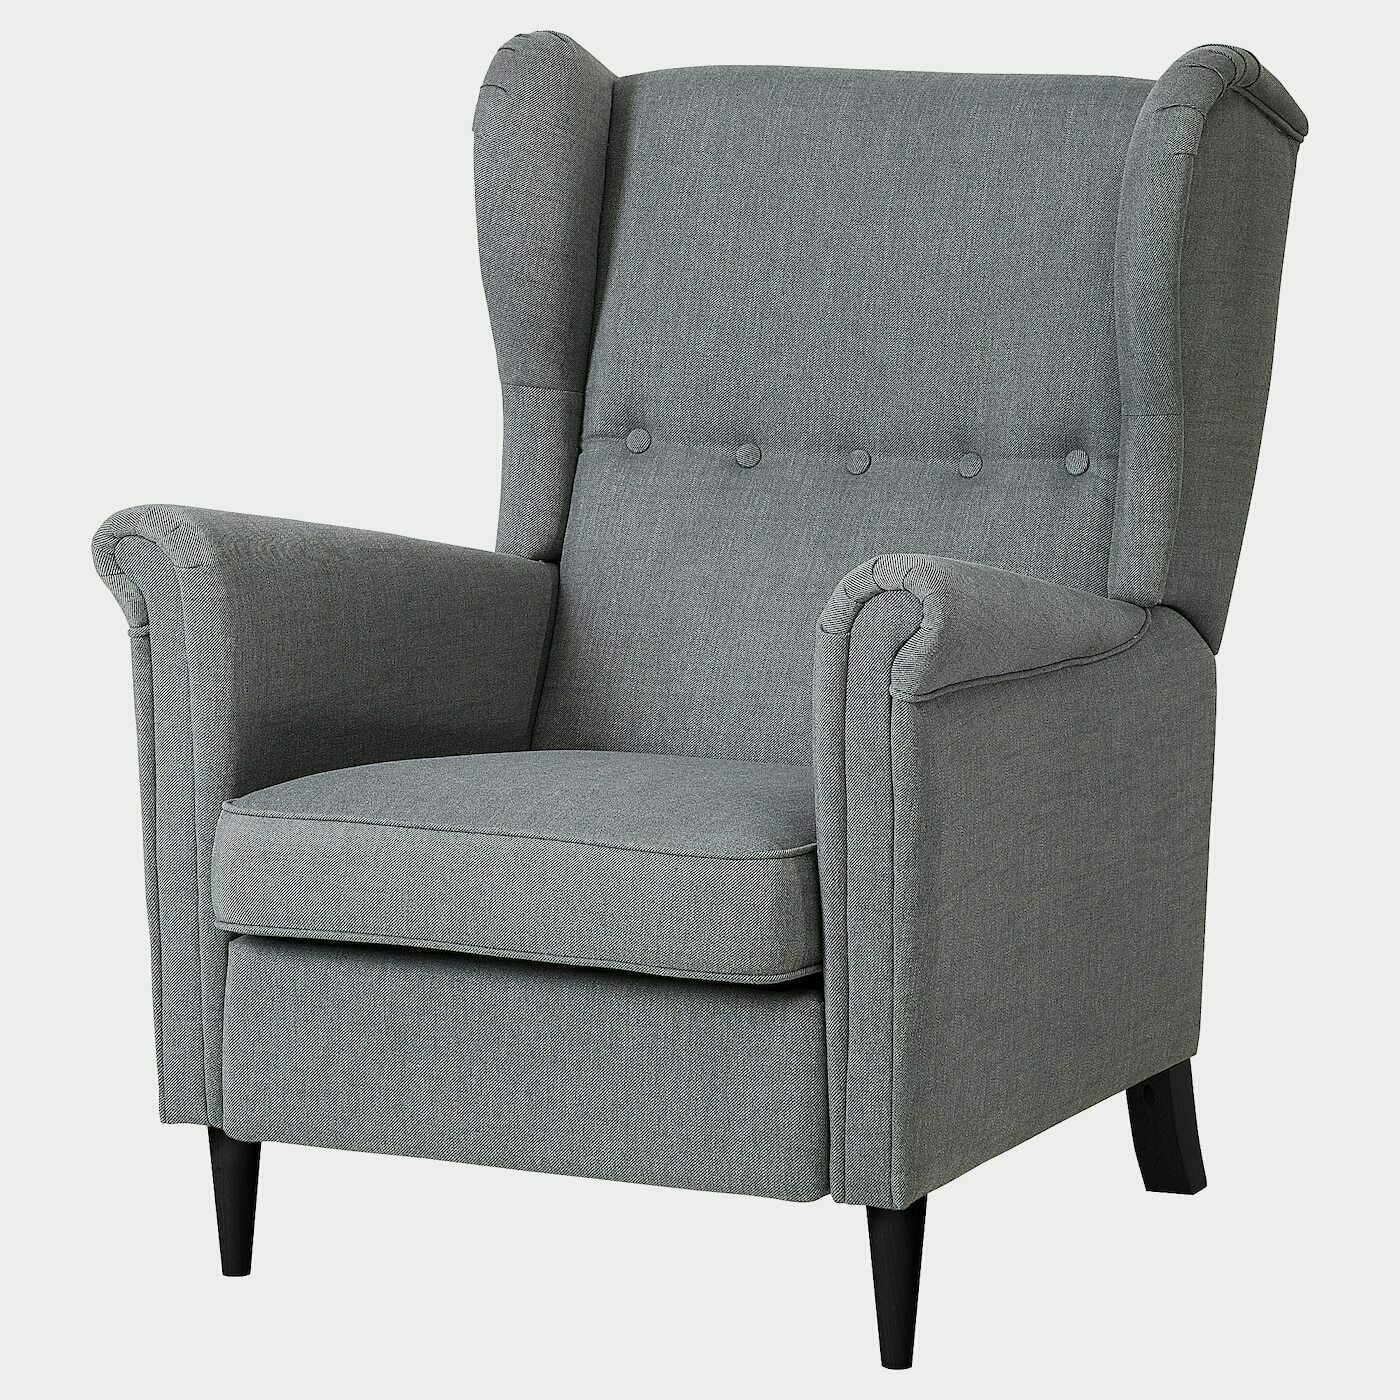 STRANDMON Ruhesessel  - Sessel & Récamieren - Möbel Ideen für dein Zuhause von Home Trends. Möbel Trends von Social Media Influencer für dein Skandi Zuhause.